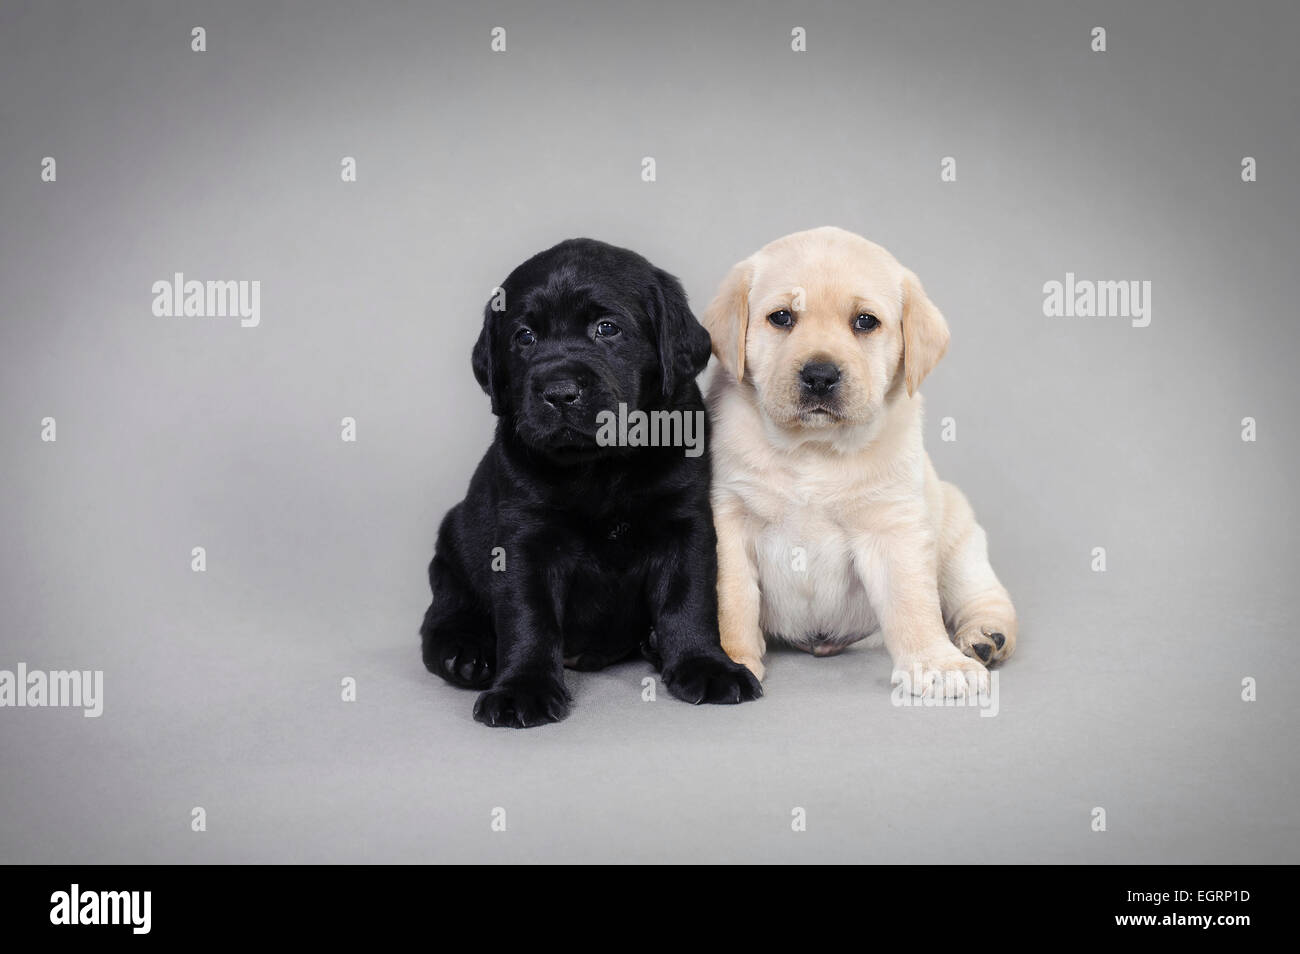 Deux Labrador retriever puppies sur fond gris Banque D'Images